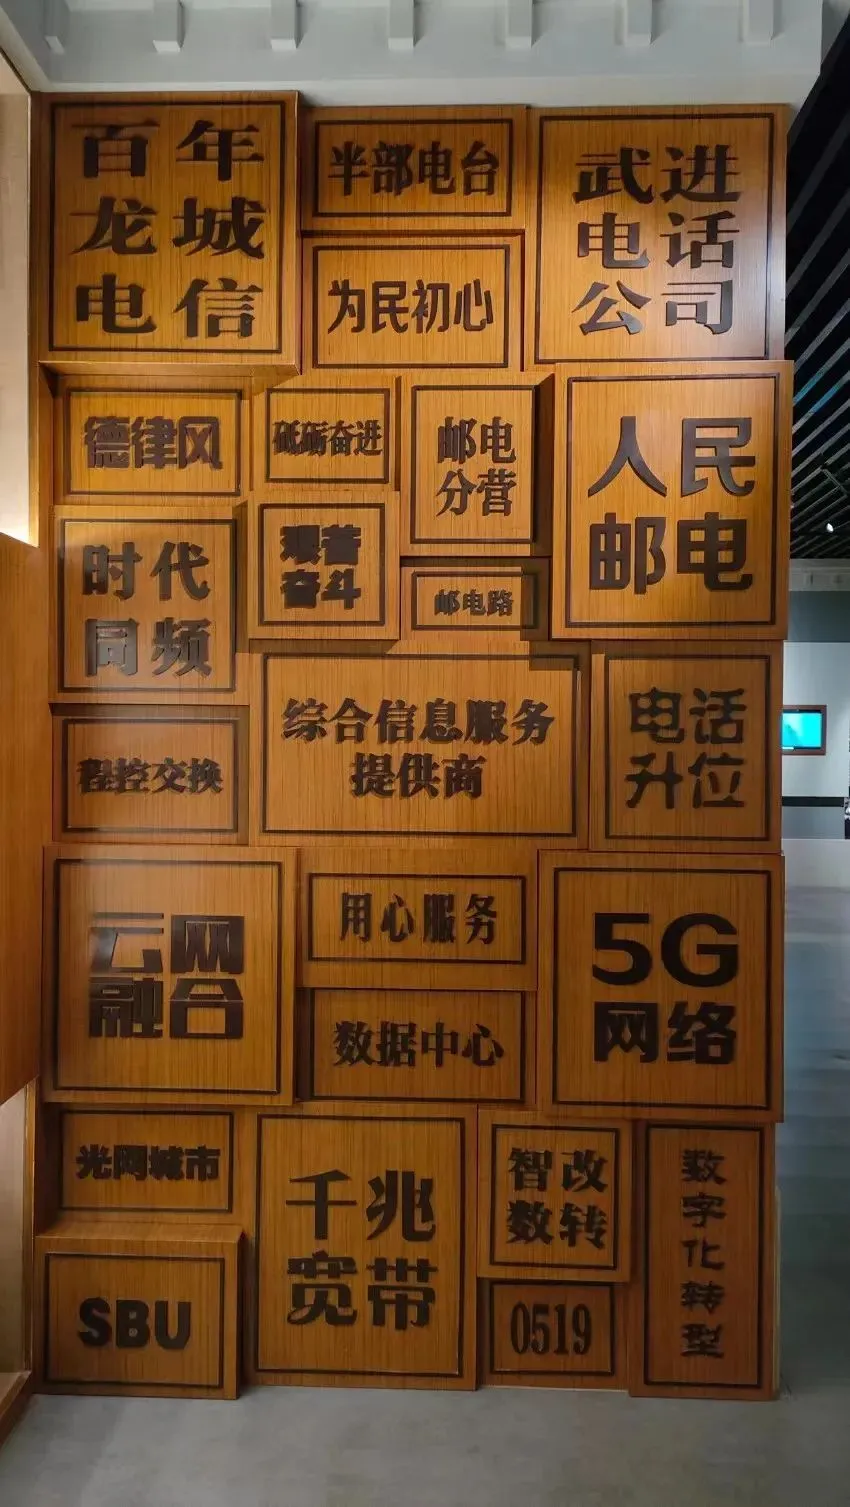 深圳家用5G网络机柜的探索与启示：新兴技术的独特魅力  第5张